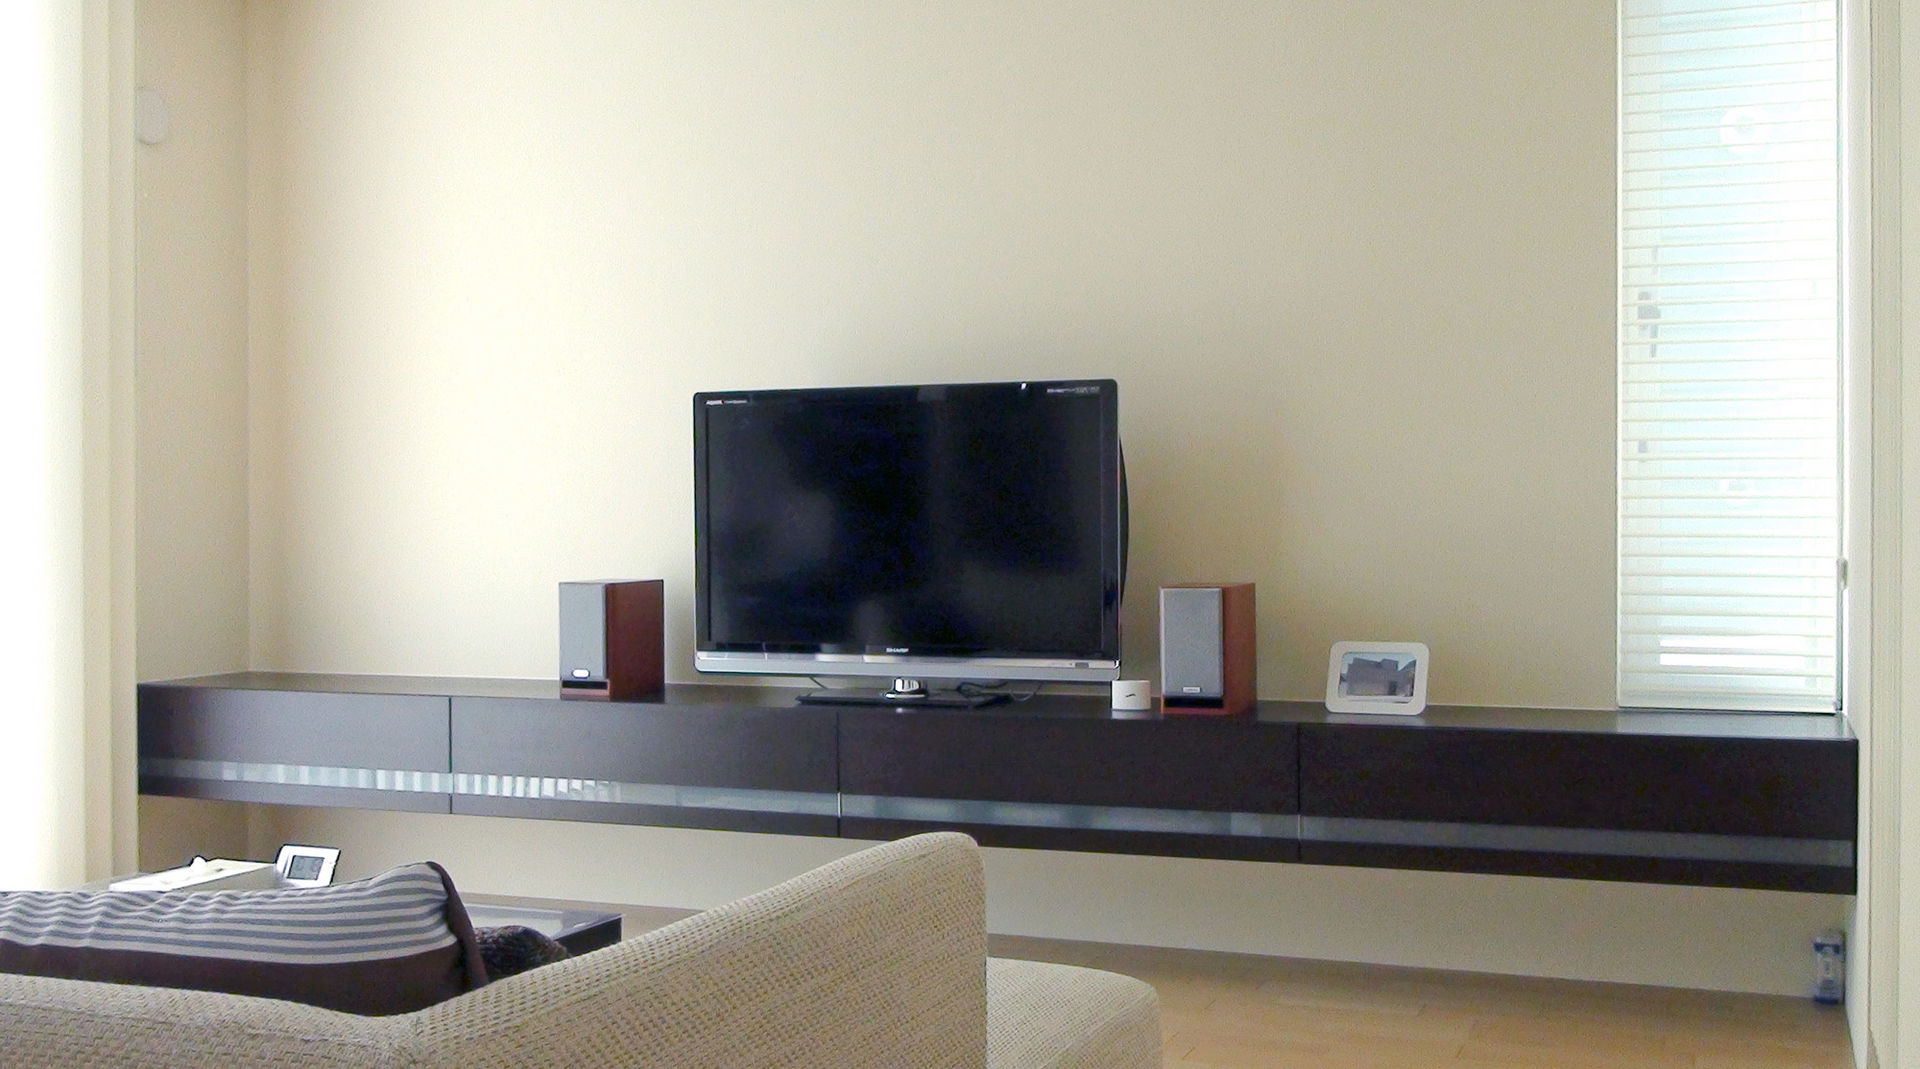 インテリアにこだわりを持つ限られた人が手に入れているフロート式TVボードとは、その実例を公開, k-design(カワジリデザイン) k-design(カワジリデザイン) Modern living room TV stands & cabinets